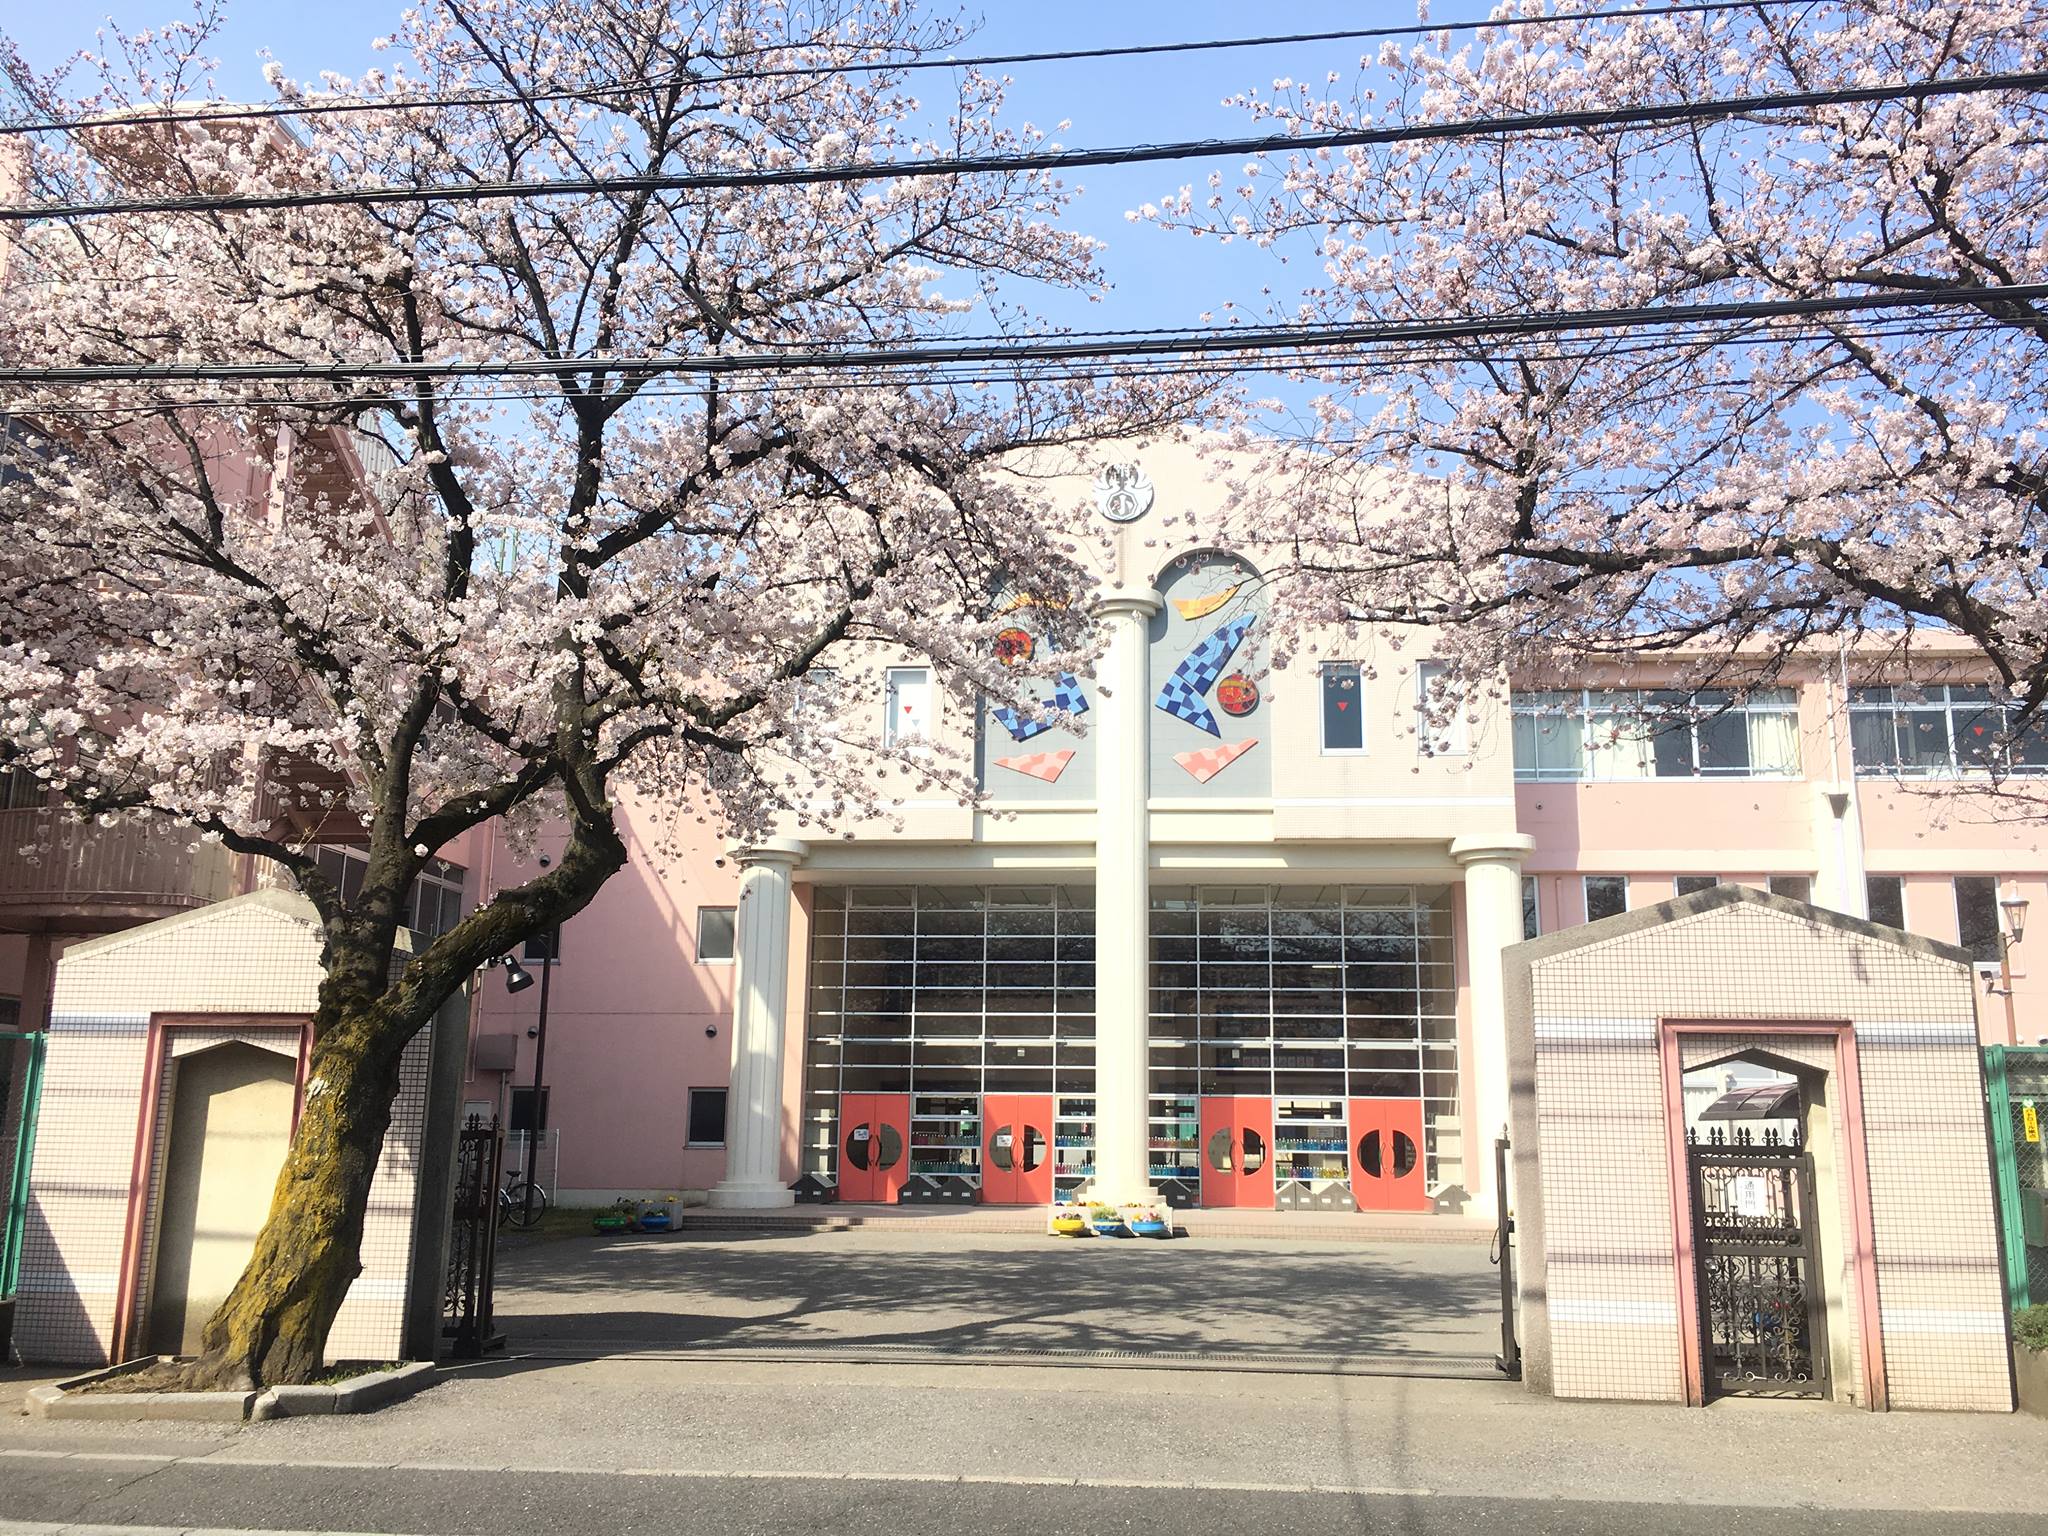 埼玉大学教育学部附属小学校の校舎の写真。